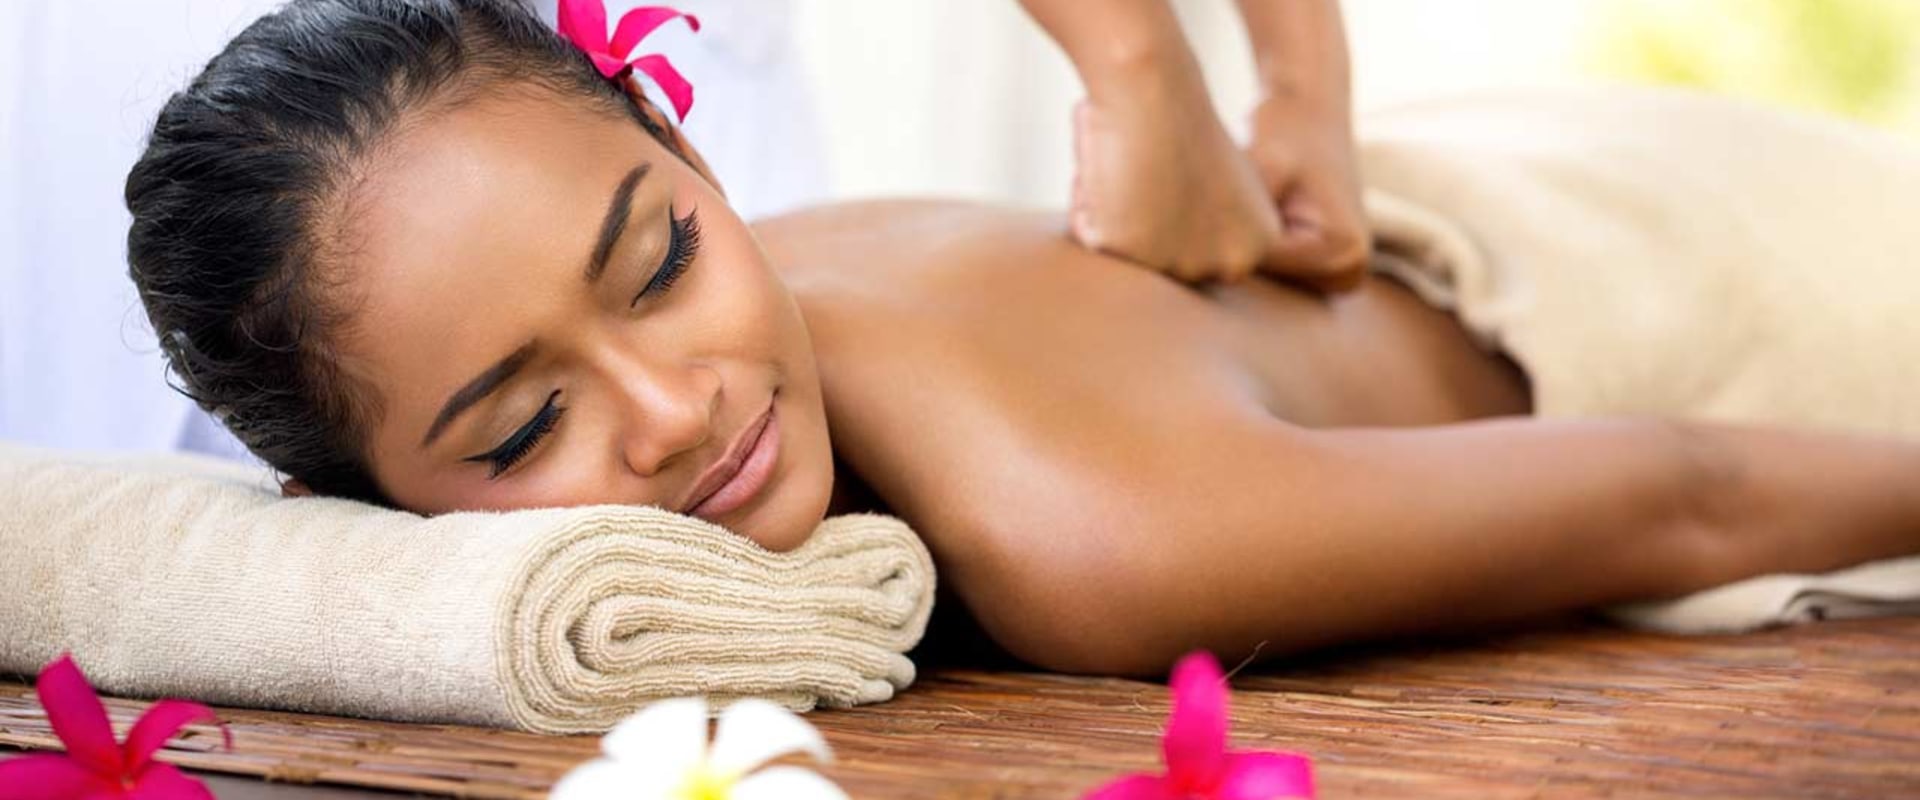 Was ist der unterschied zwischen thai-massage und normaler massage?